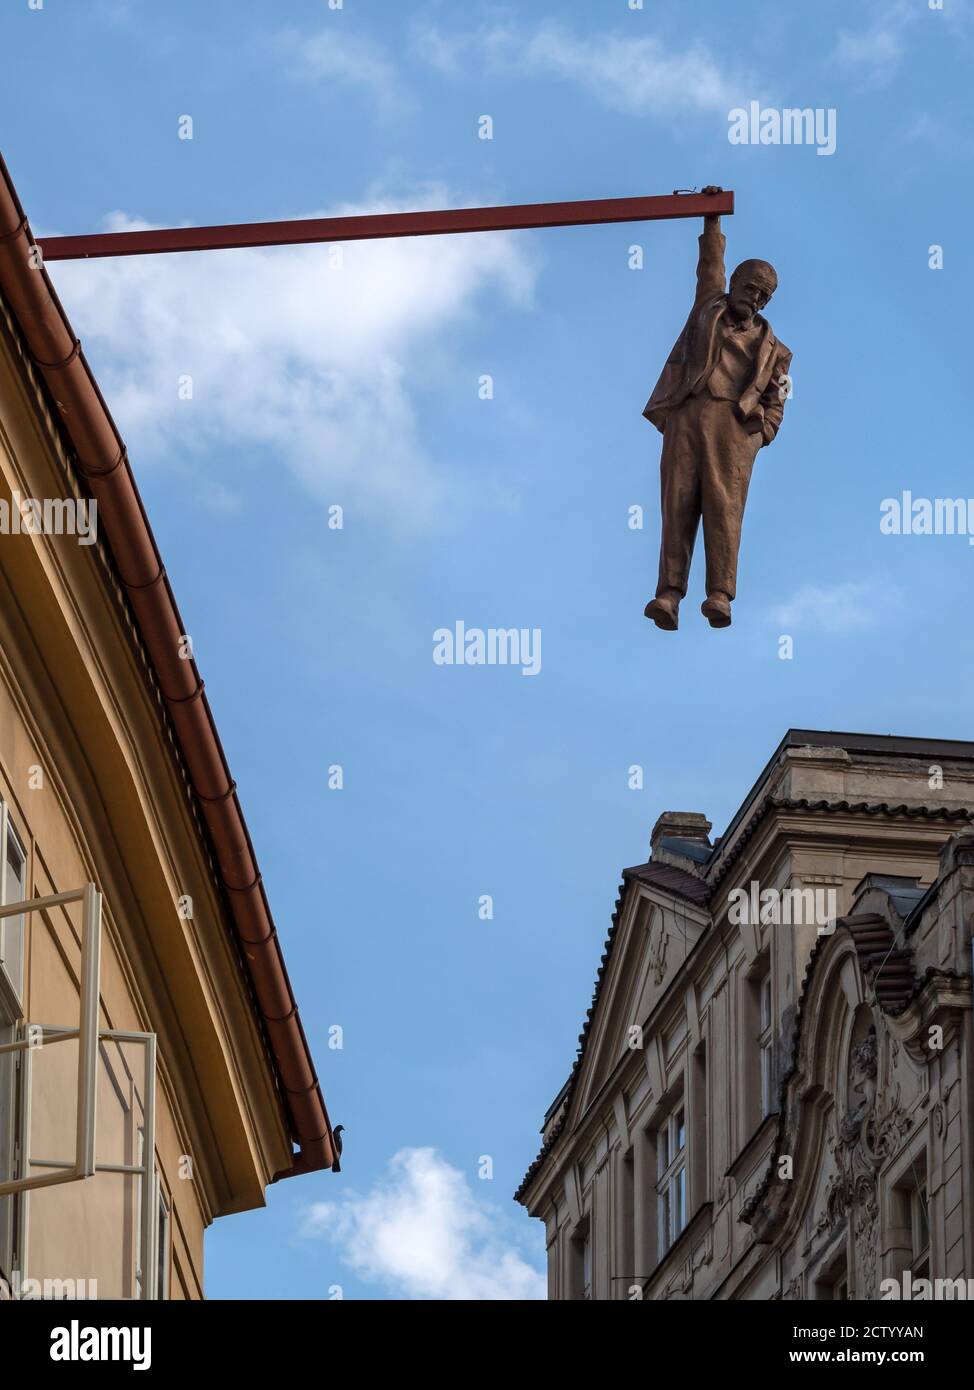 PRAG, TSCHECHISCHE REPUBLIK - 18. JULI 2019: Mann, der die Statue aushängend (von David Cerny) Stockfoto